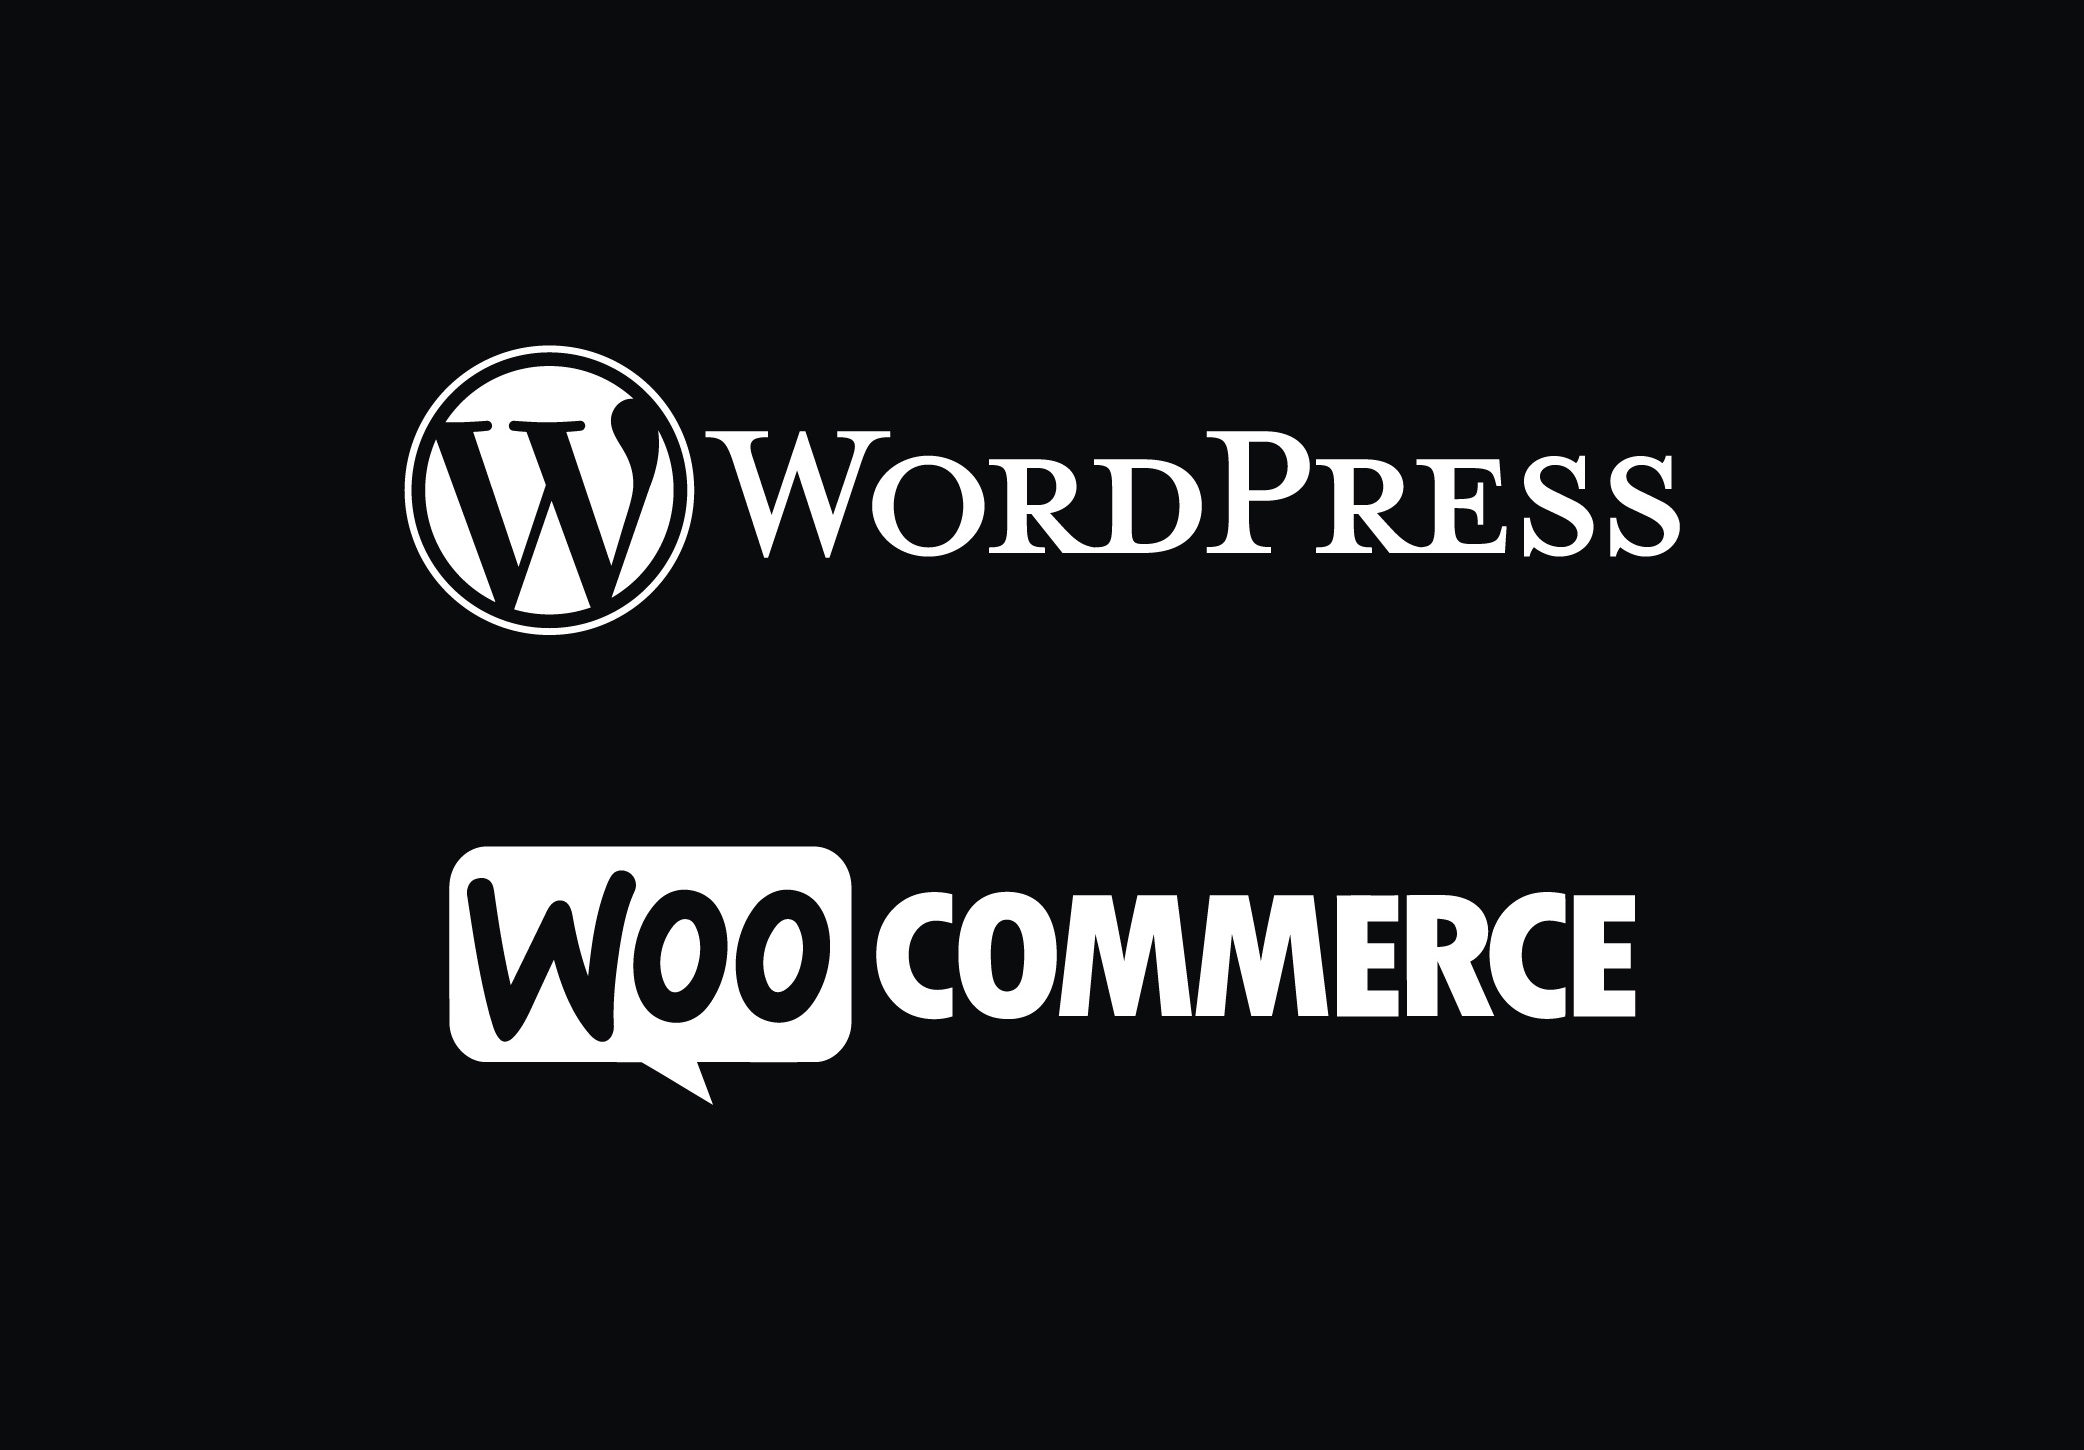 Wordpress-WooCommerce-aspect-ratio-670-466